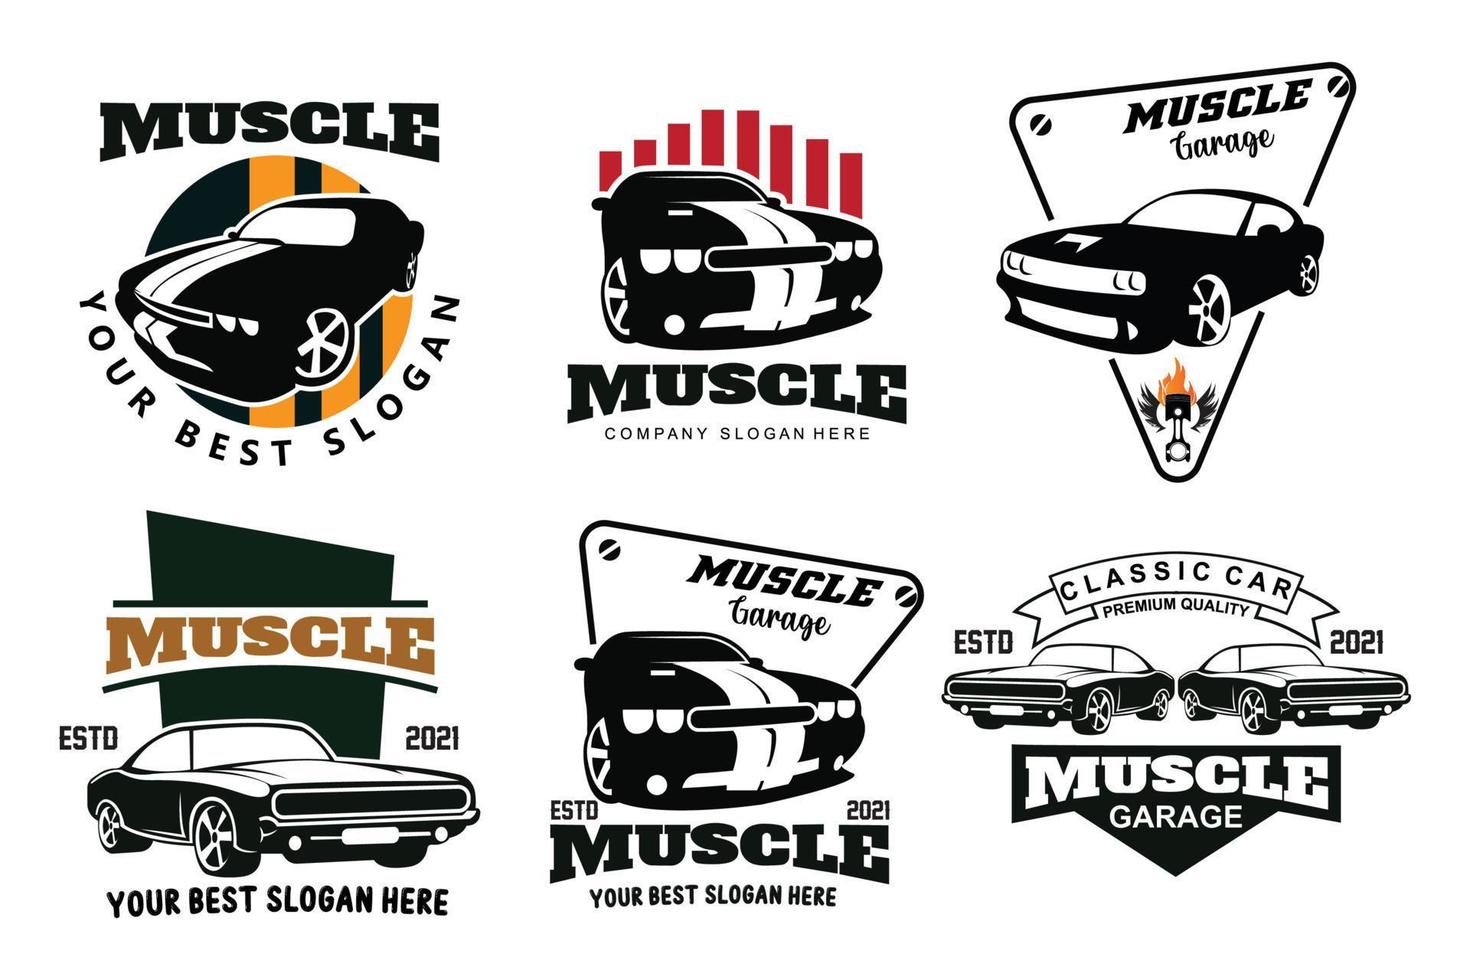 Amerikaanse klassieke auto logo bundel decorontwerp, spier auto voertuig illustratie vector